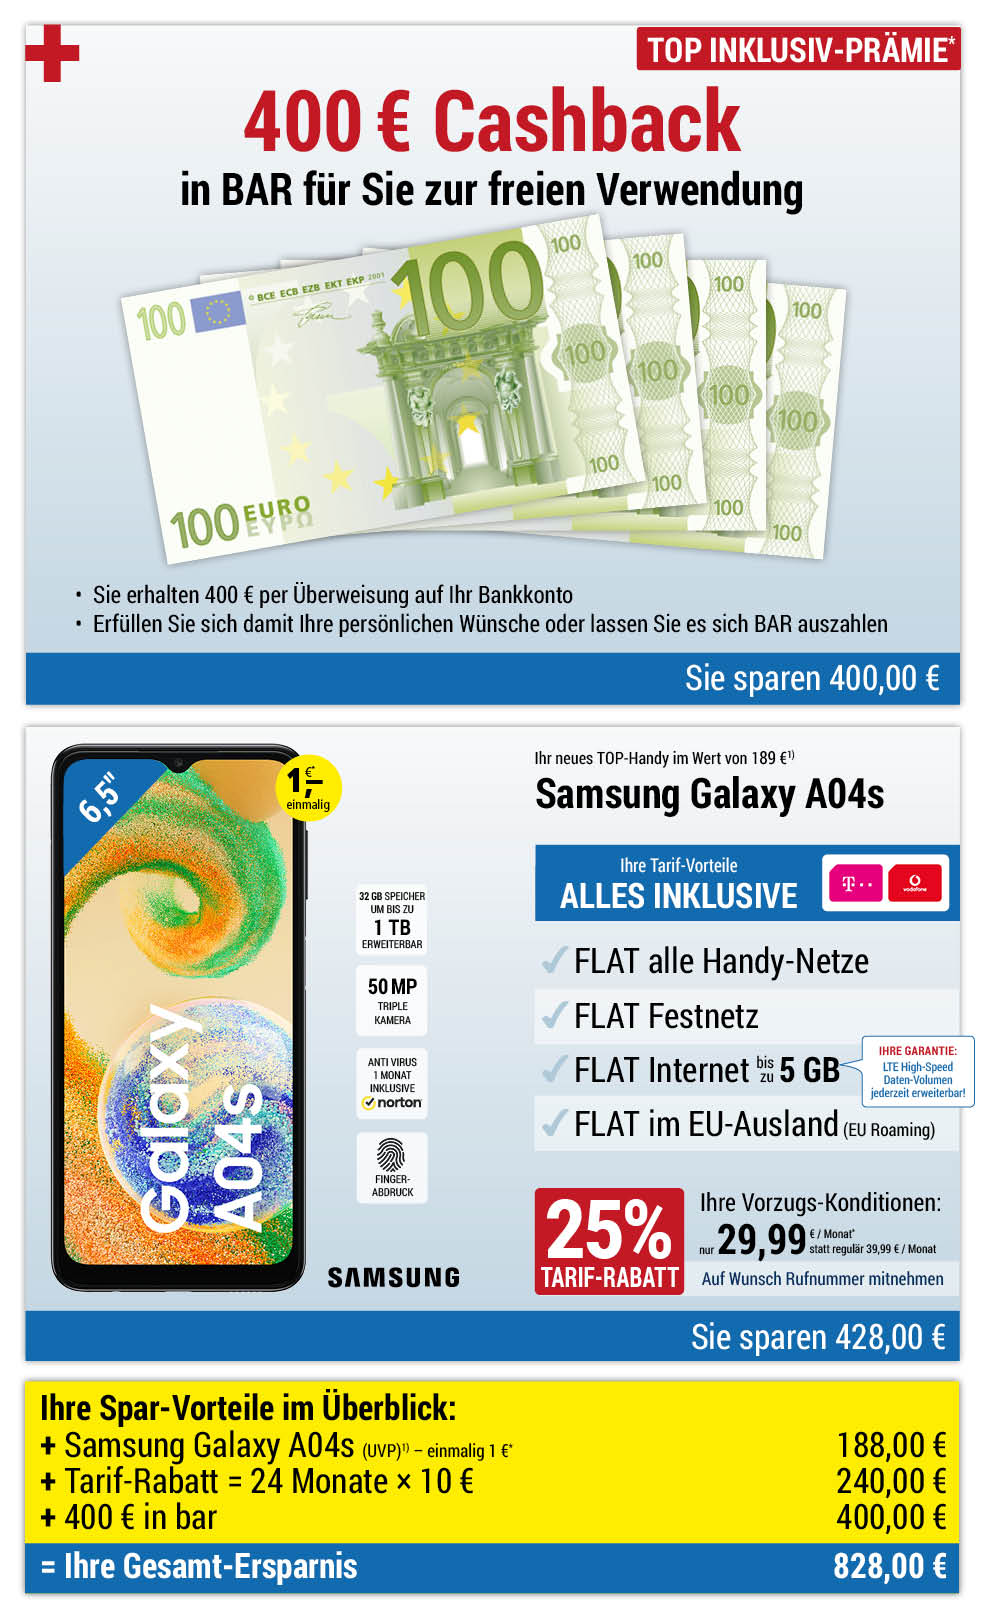 Für nur 1 €*: Samsung Galaxy A04s + 400 € bar INKLUSIVE + Handyverträge mit ALL NET FLAT für 29,99 €/Monat